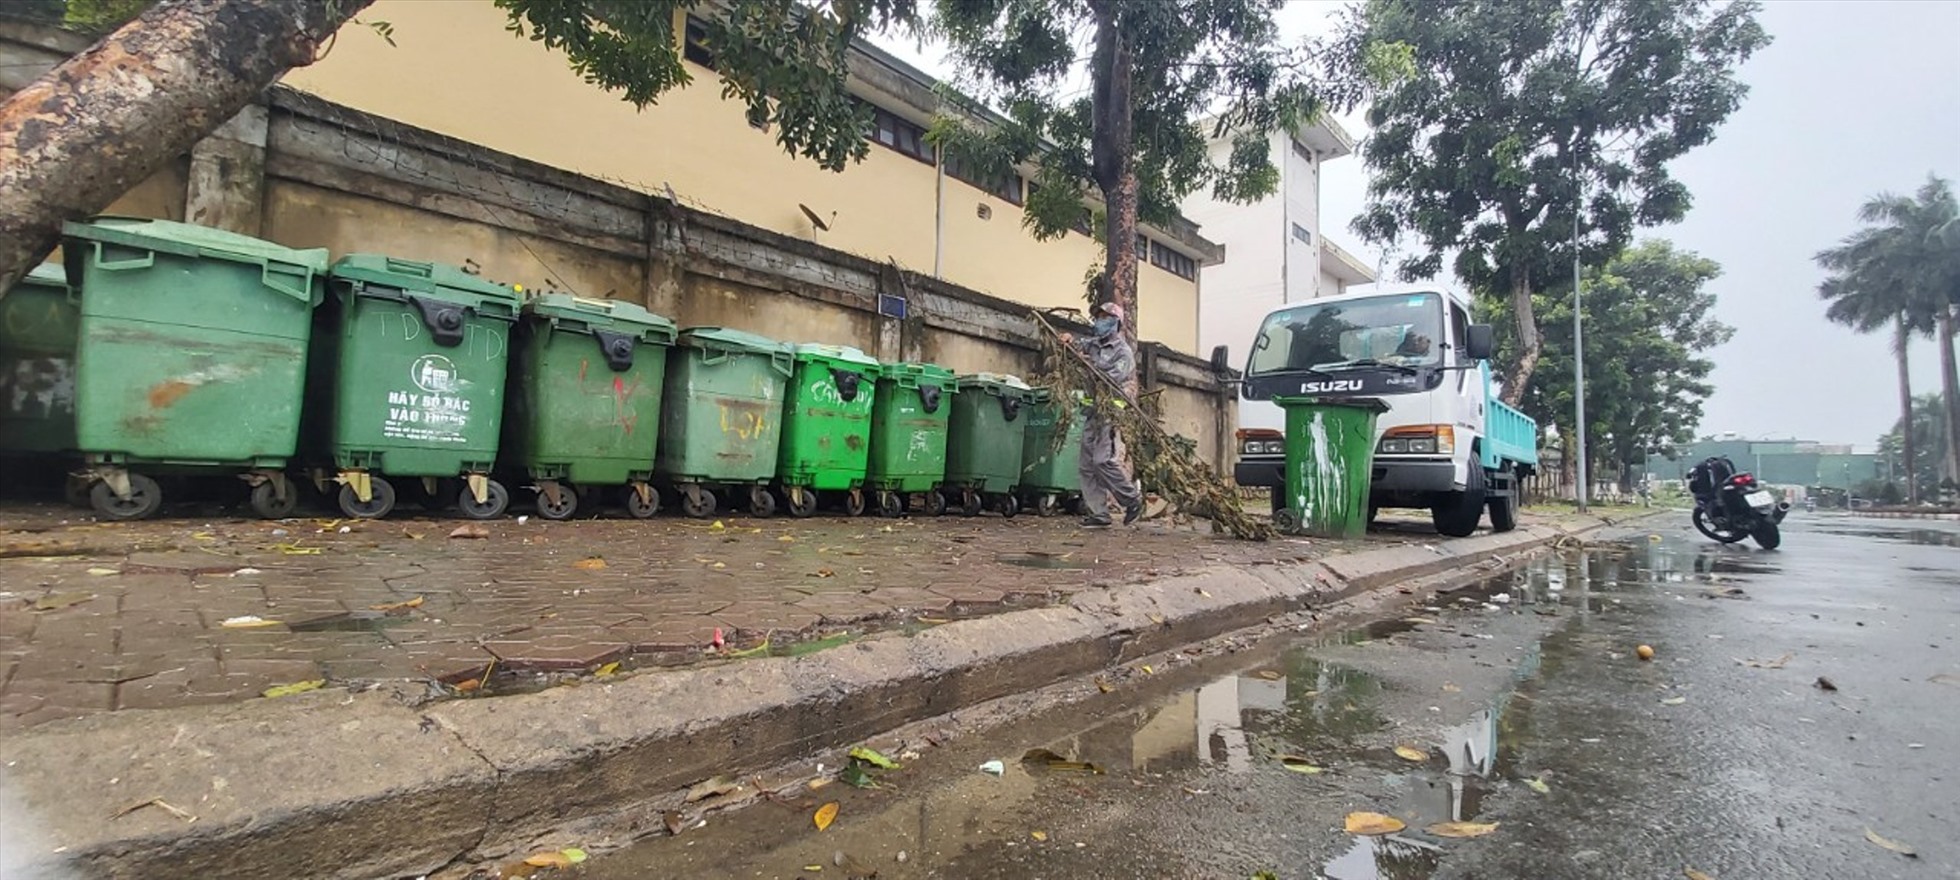 Chỉ vài giờ sau khi Báo Lao Động và các cơ quan báo chí khác phản ánh, chính quyền tỉnh Quảng Ngãi đã có chỉ đạo “nóng“, xử lý ngay tình trạng để rác thải ùn ứ khắp nơi vì không được thu gom.